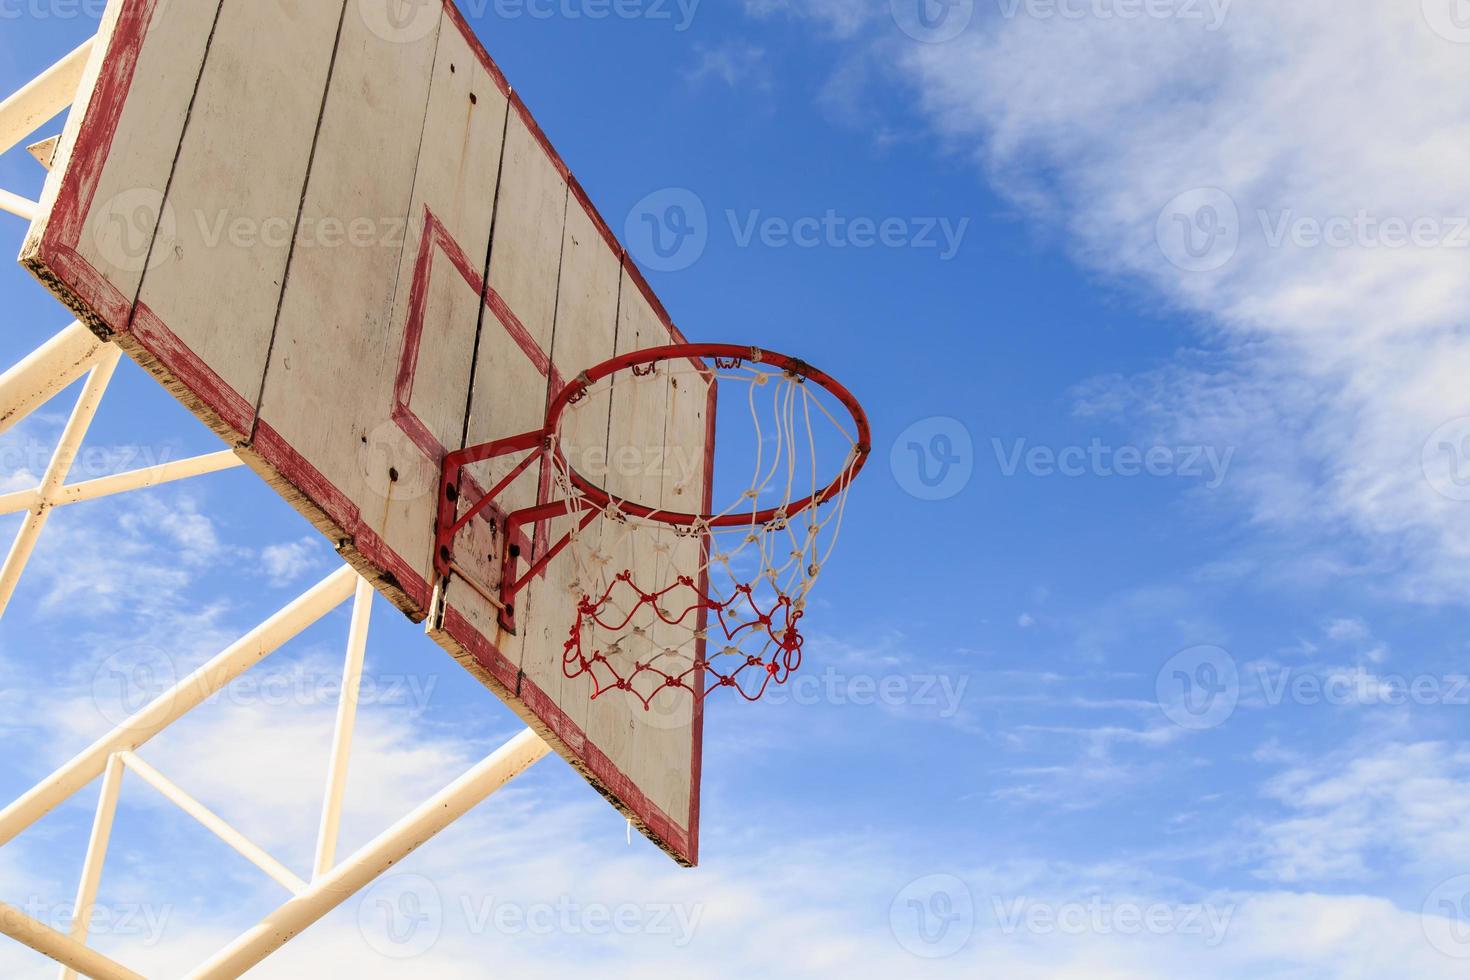 basketbalring met kooi met blauwe hemelachtergrond foto